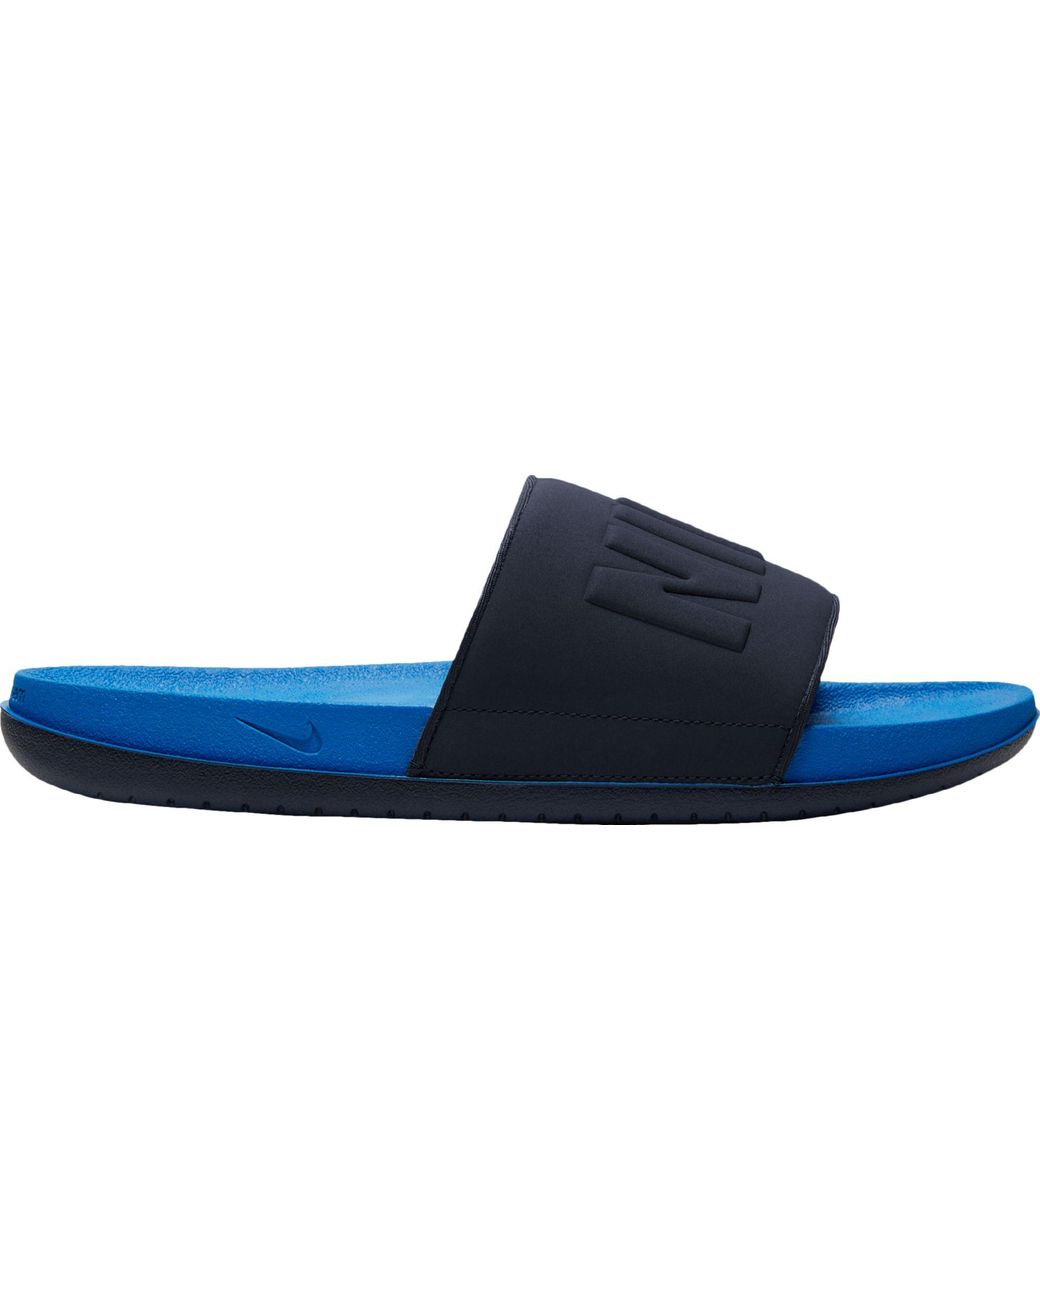 blue nike flip flops